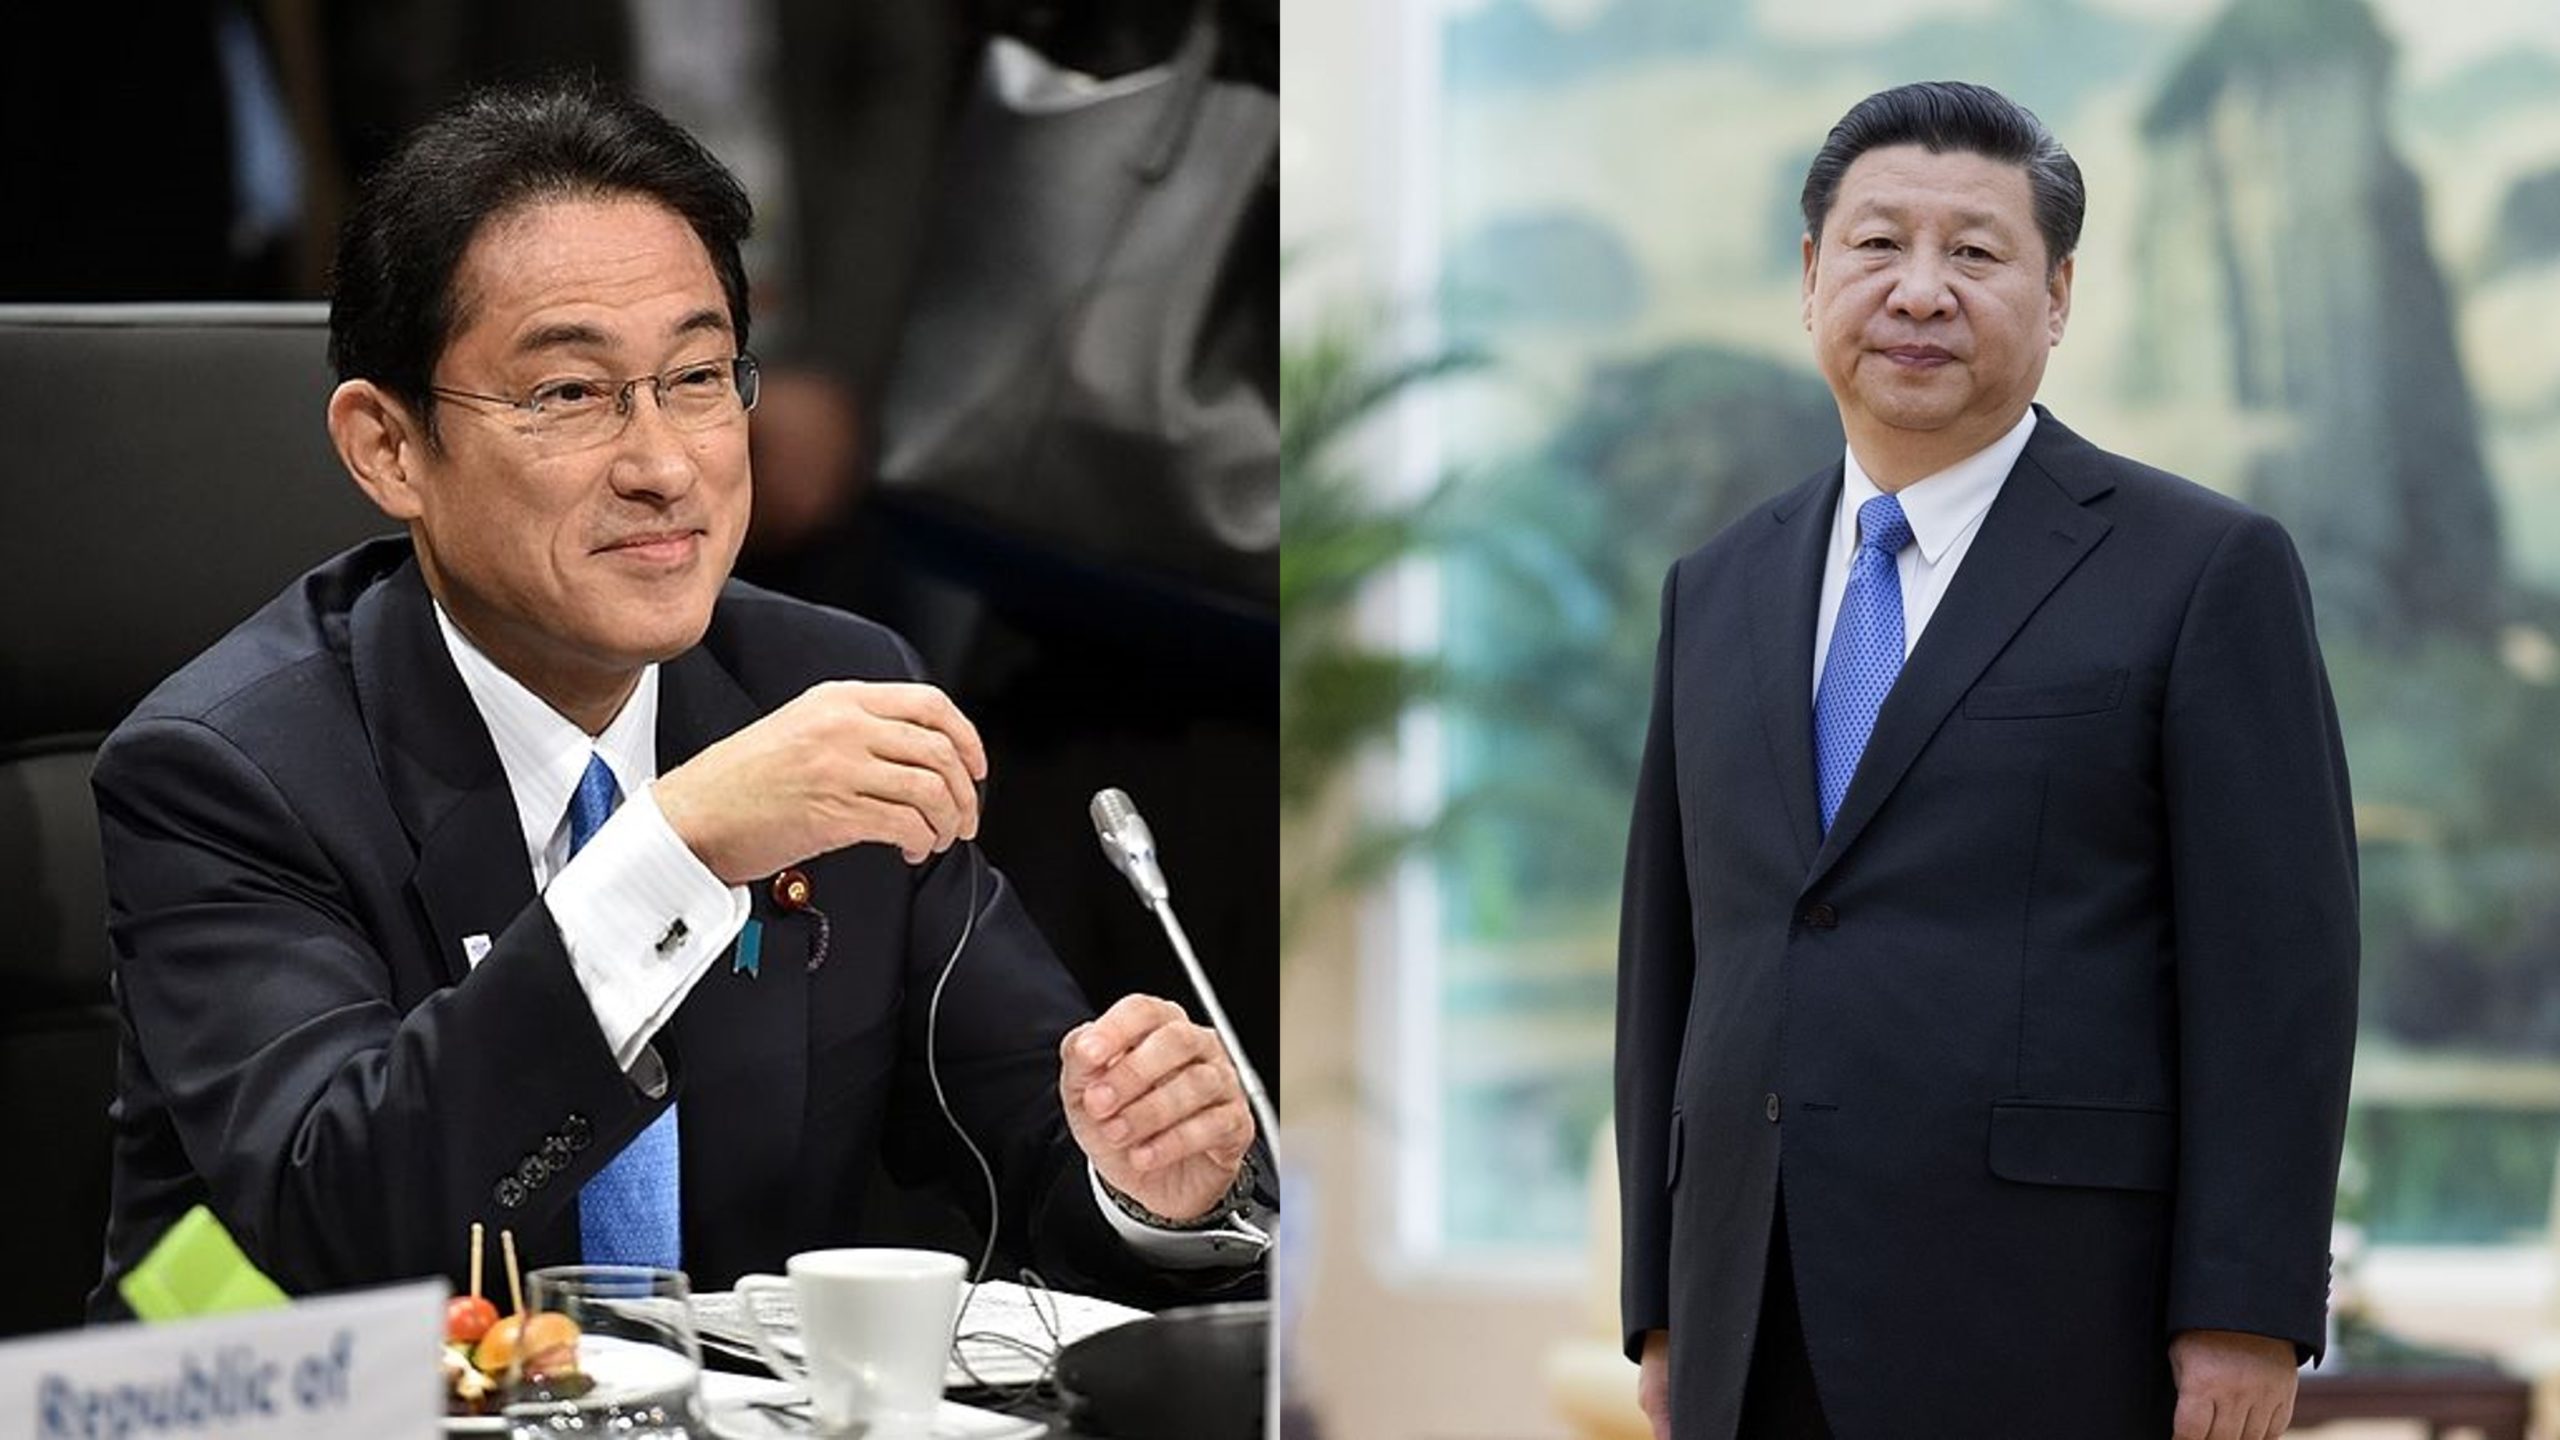 Fumio Kishida and Xi Jinping